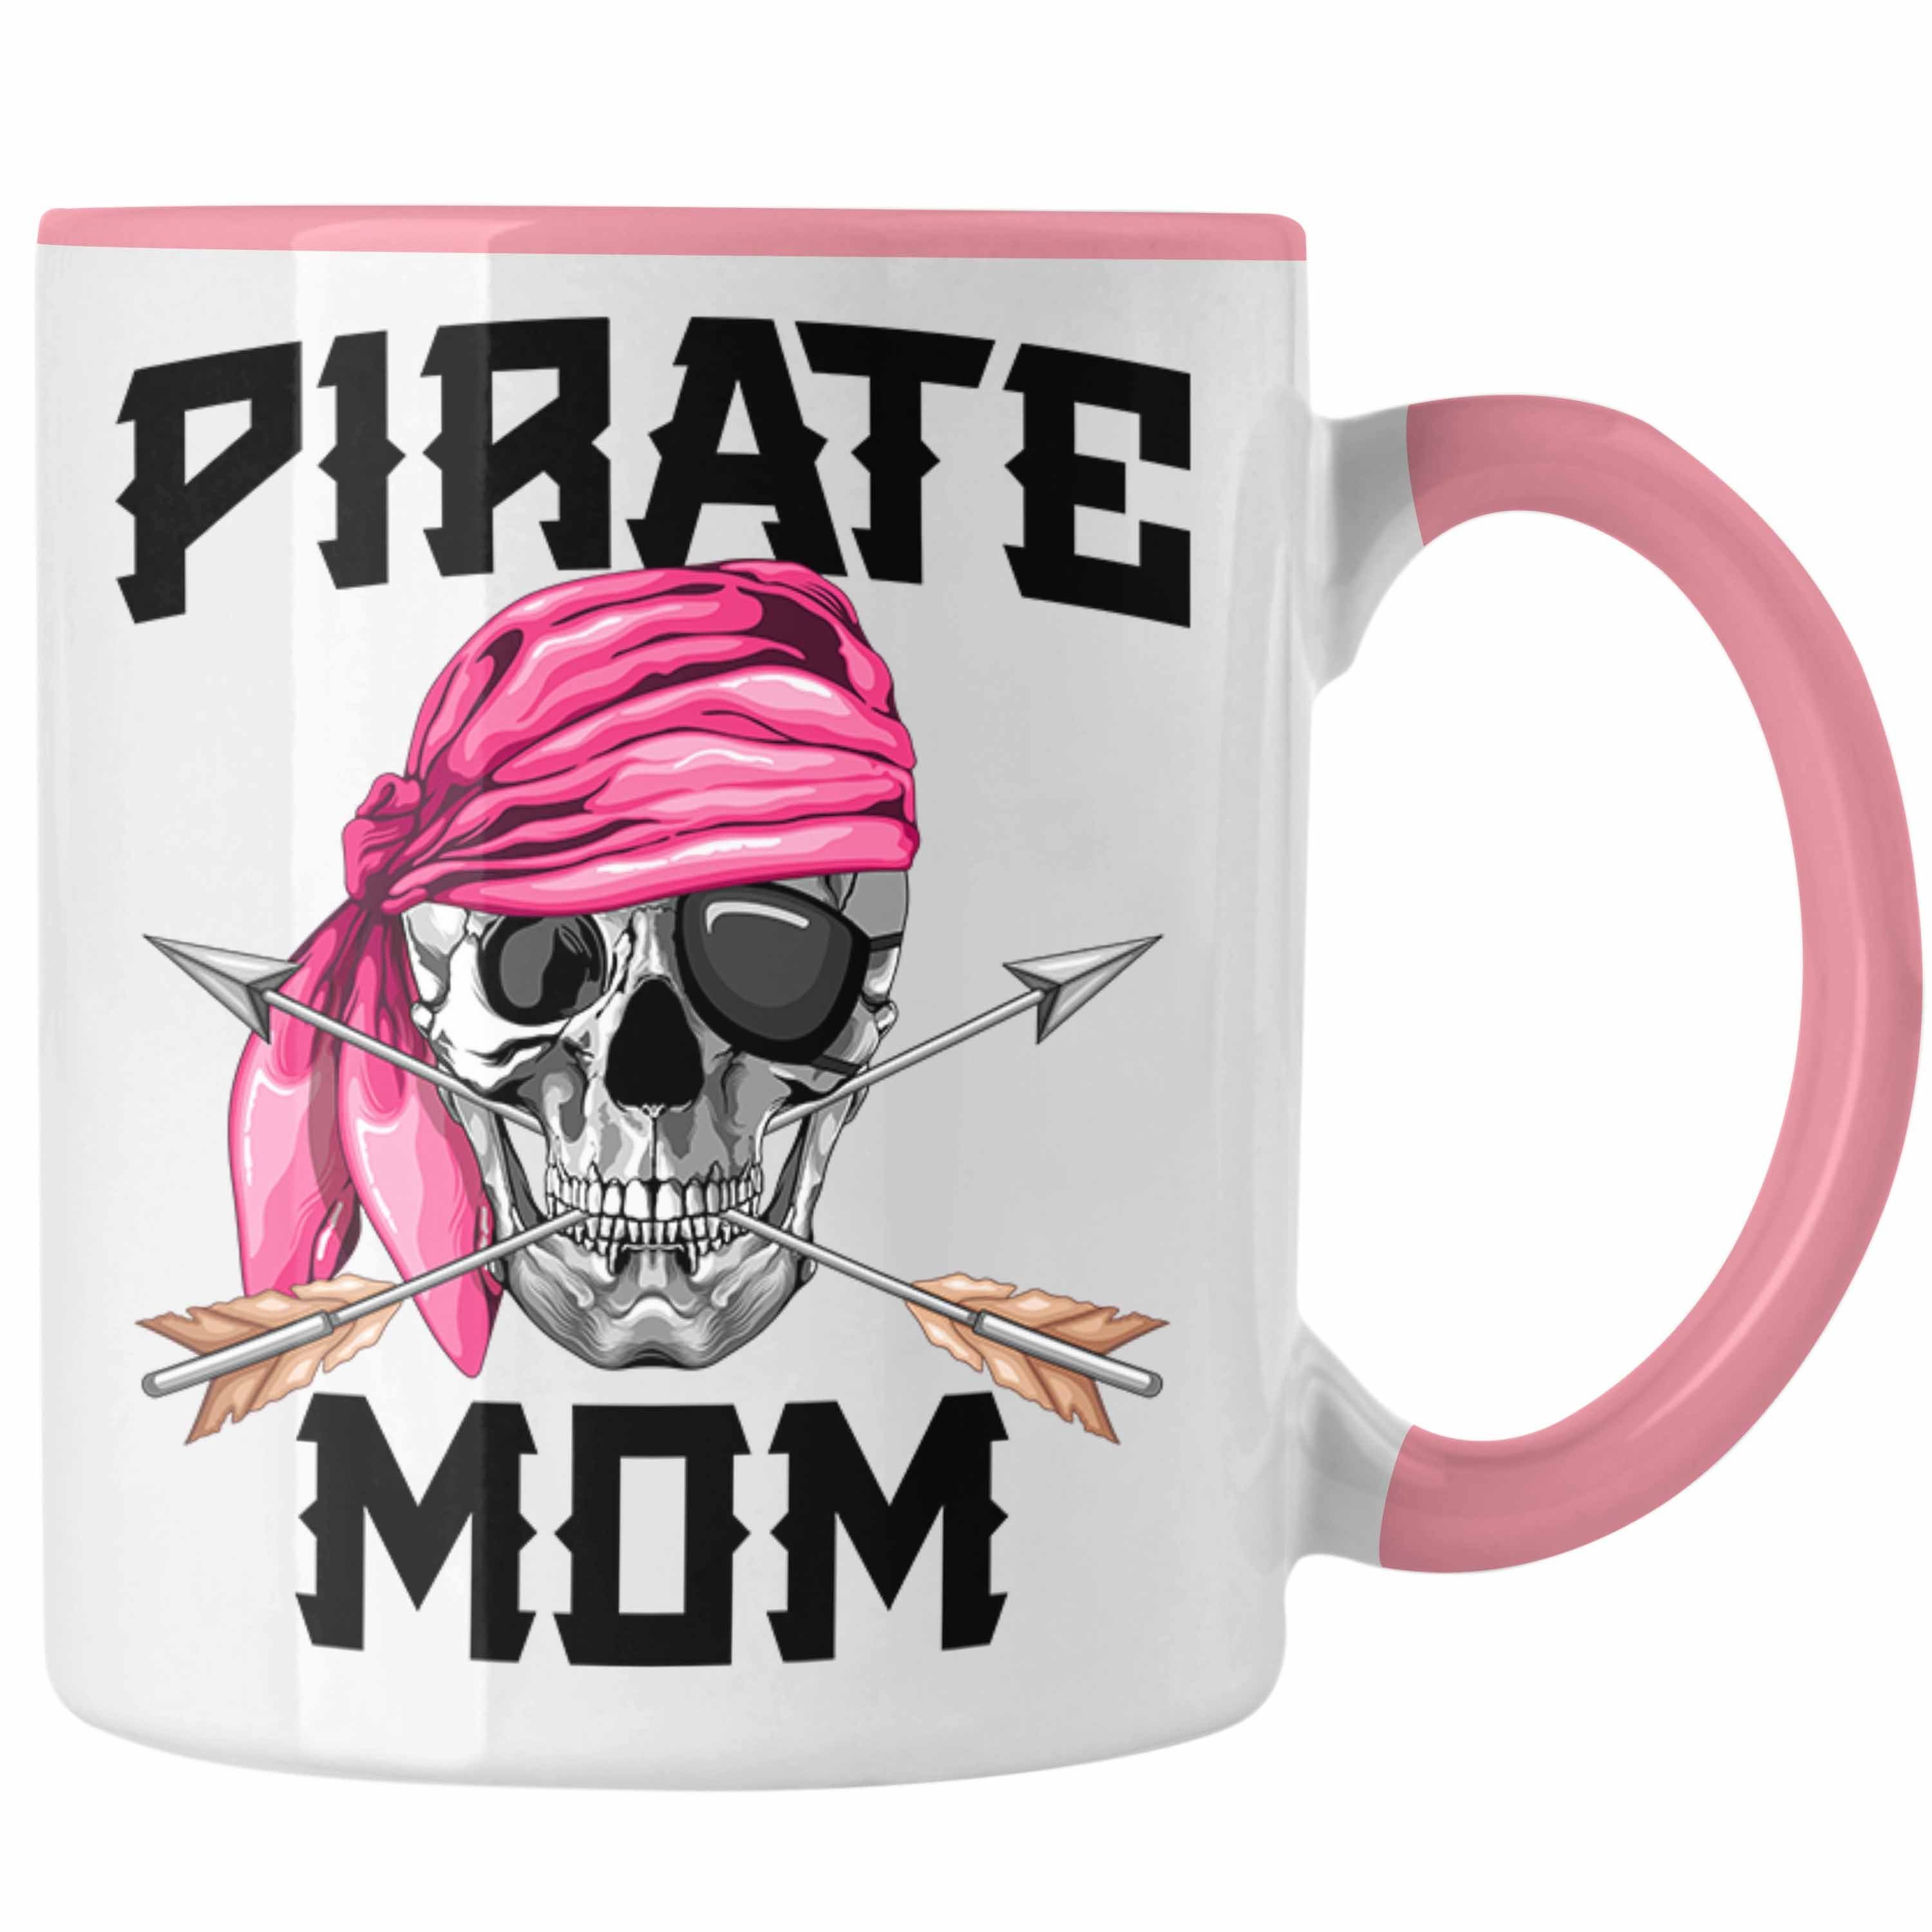 Trendation Tasse Pirate Mom Tasse Geschenk Muttertag für eine Piraten Mutter Rosa